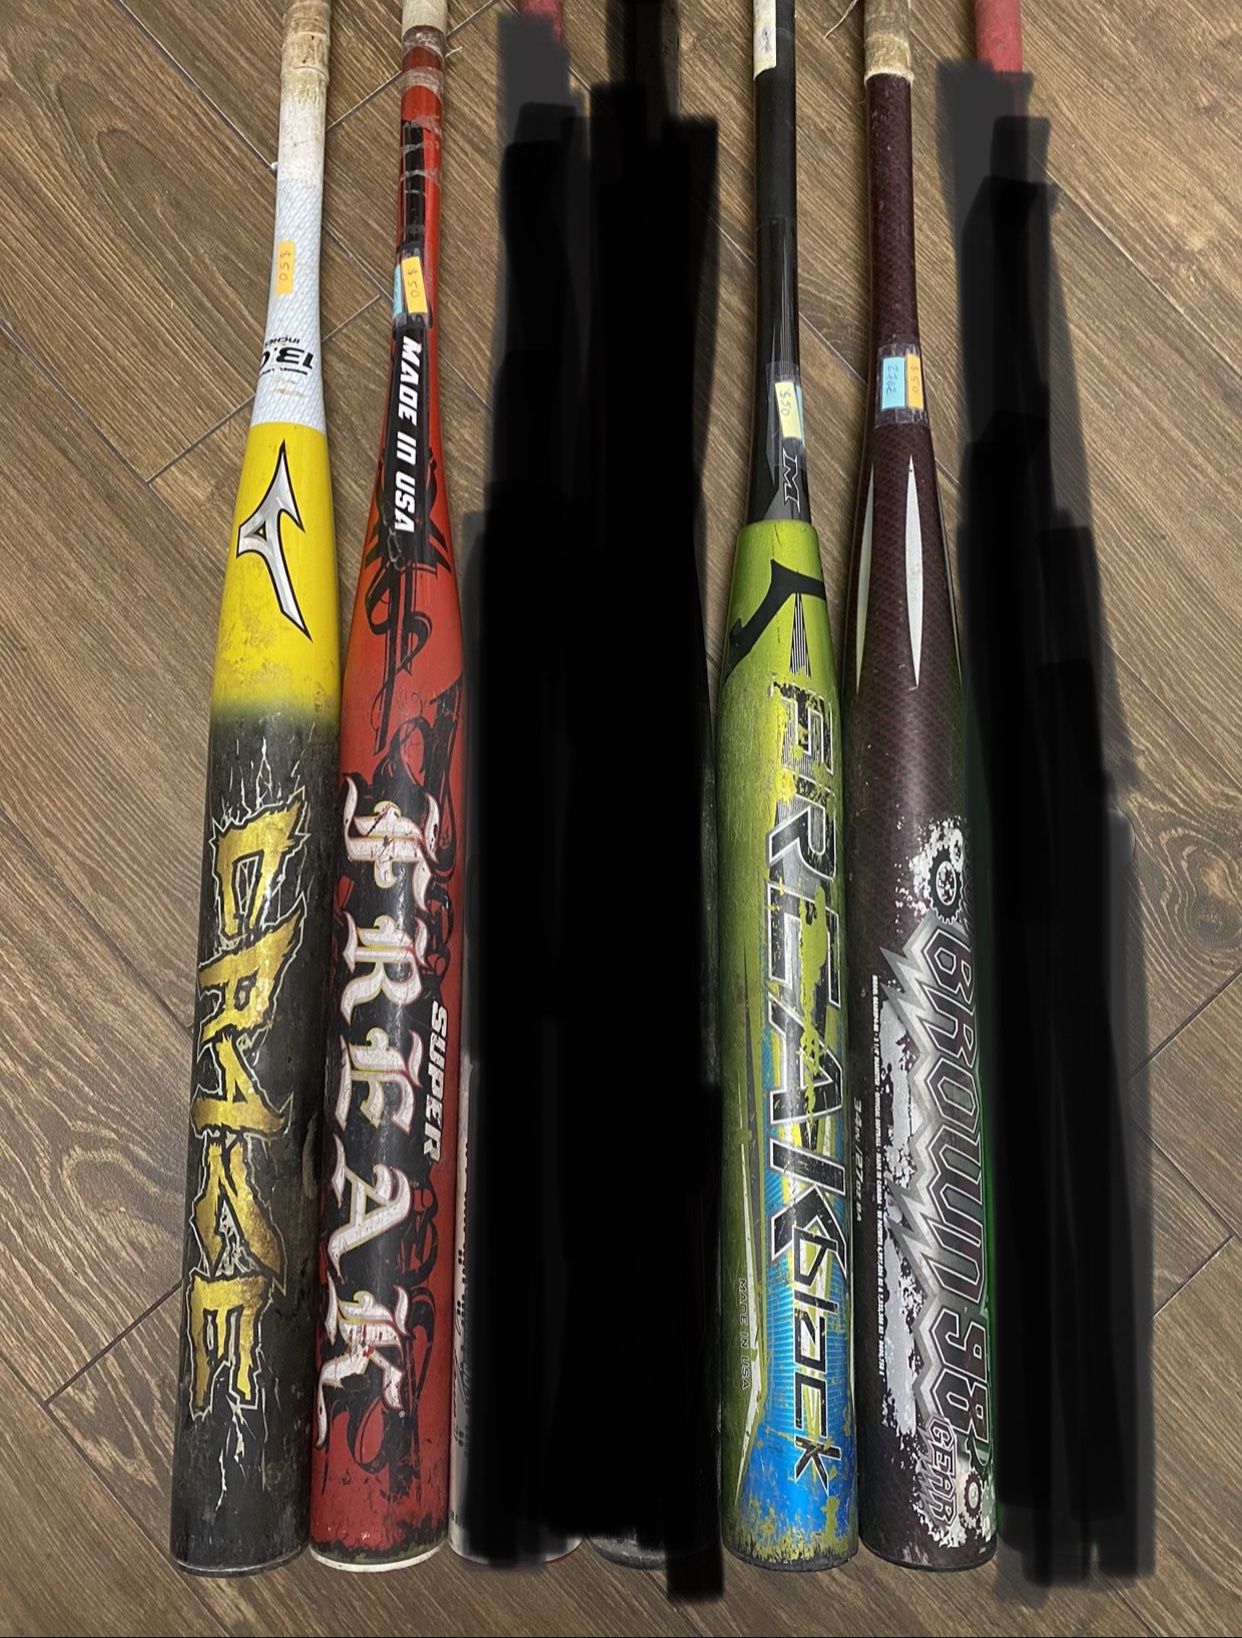 Cheap Aluminum Baseball Bat – greatbats